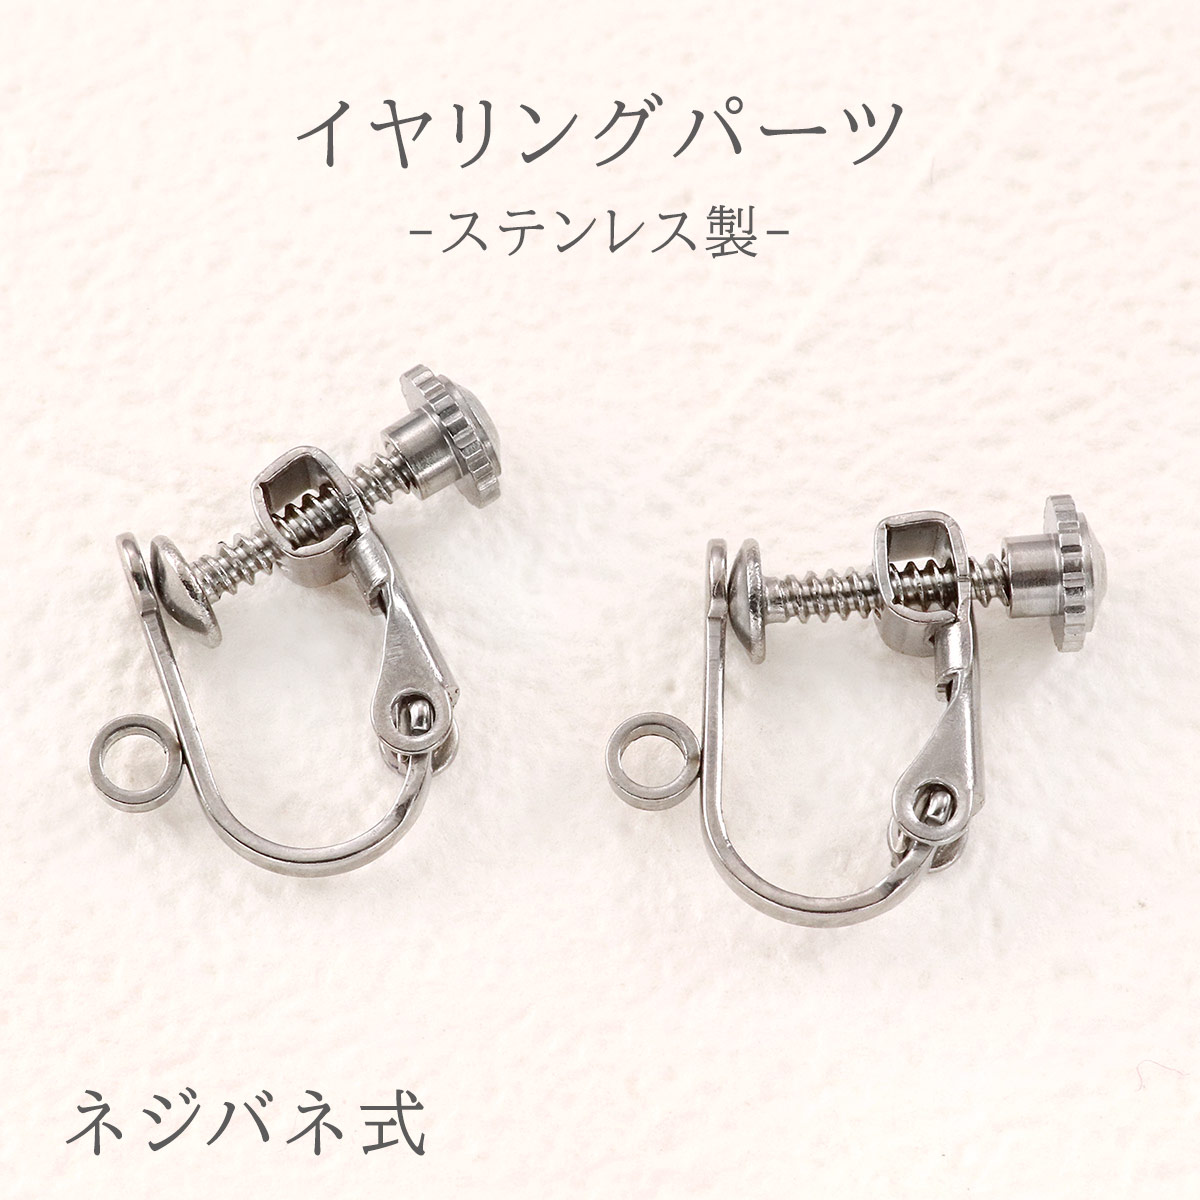 ステンレスのイヤリングパーツ♪ネジバネ式◇両耳ペアで販売/tp-120